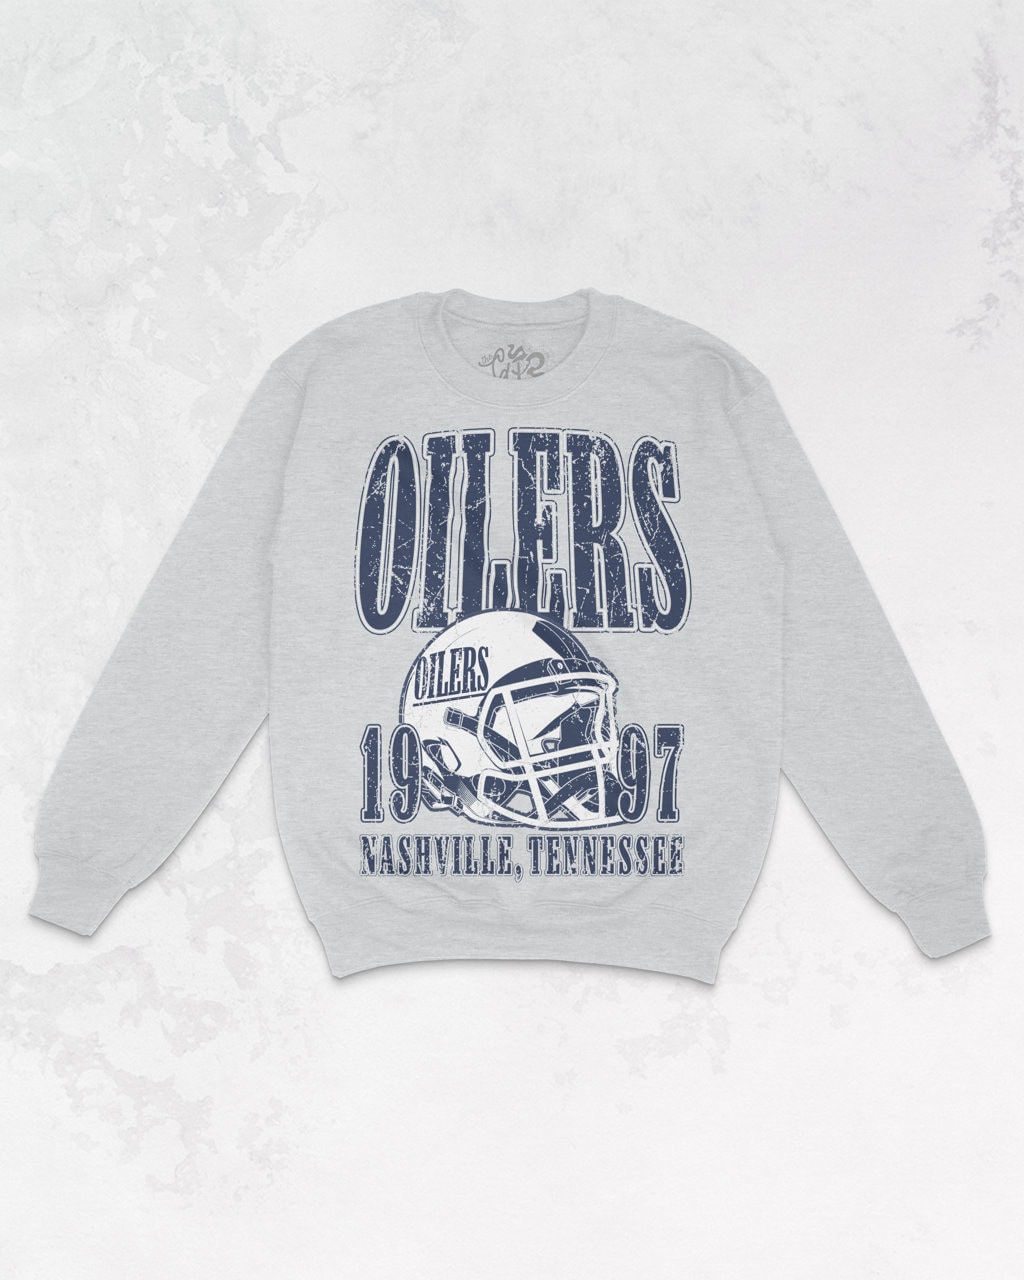 Nike Tennessee Titans Rewind Oilers Crewneck Sweatshirt / Medium